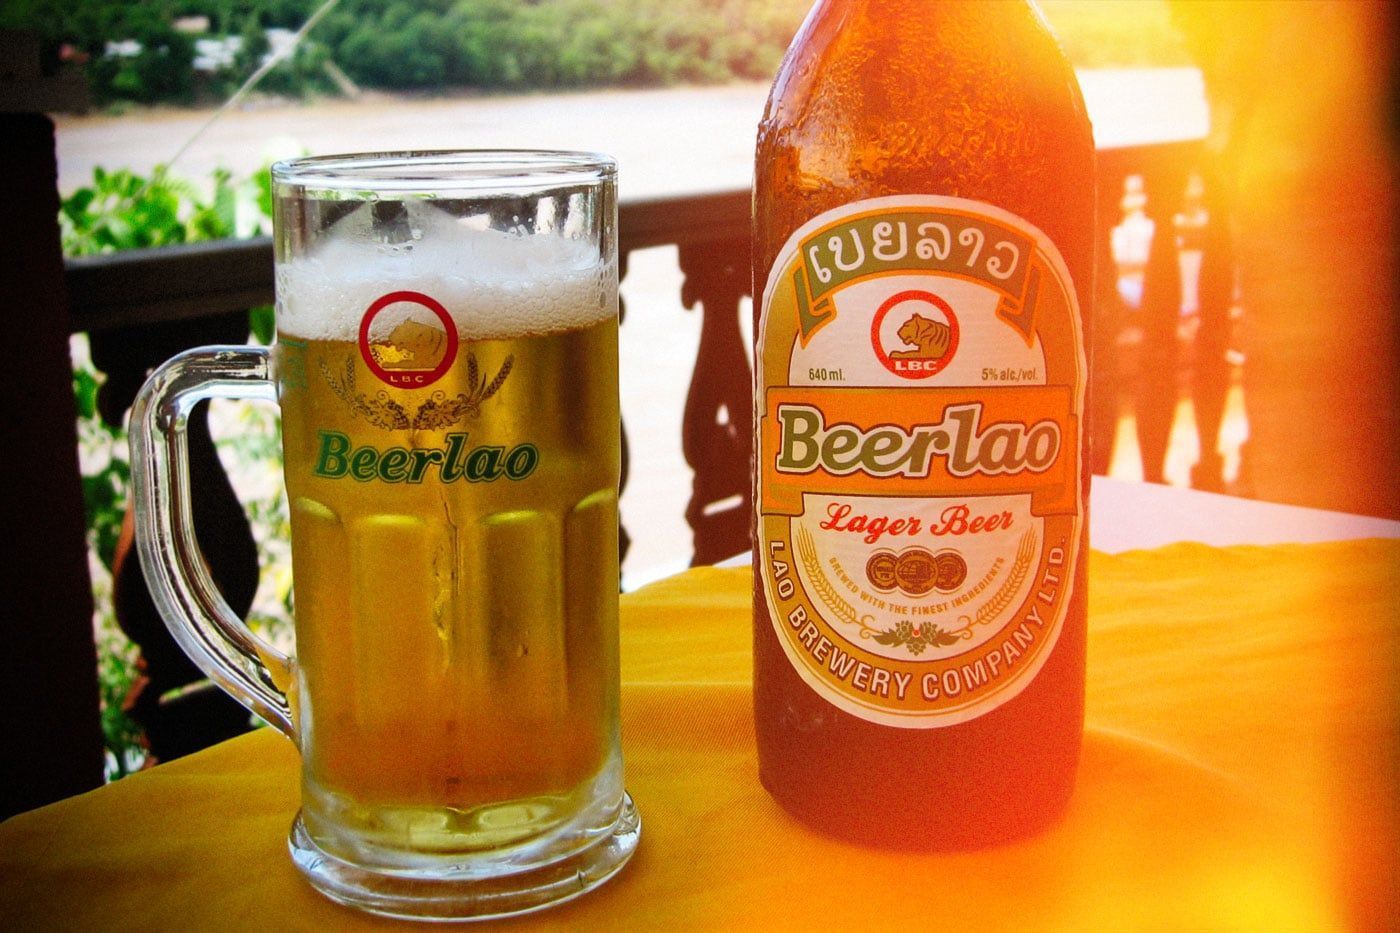 Cerveza Laos